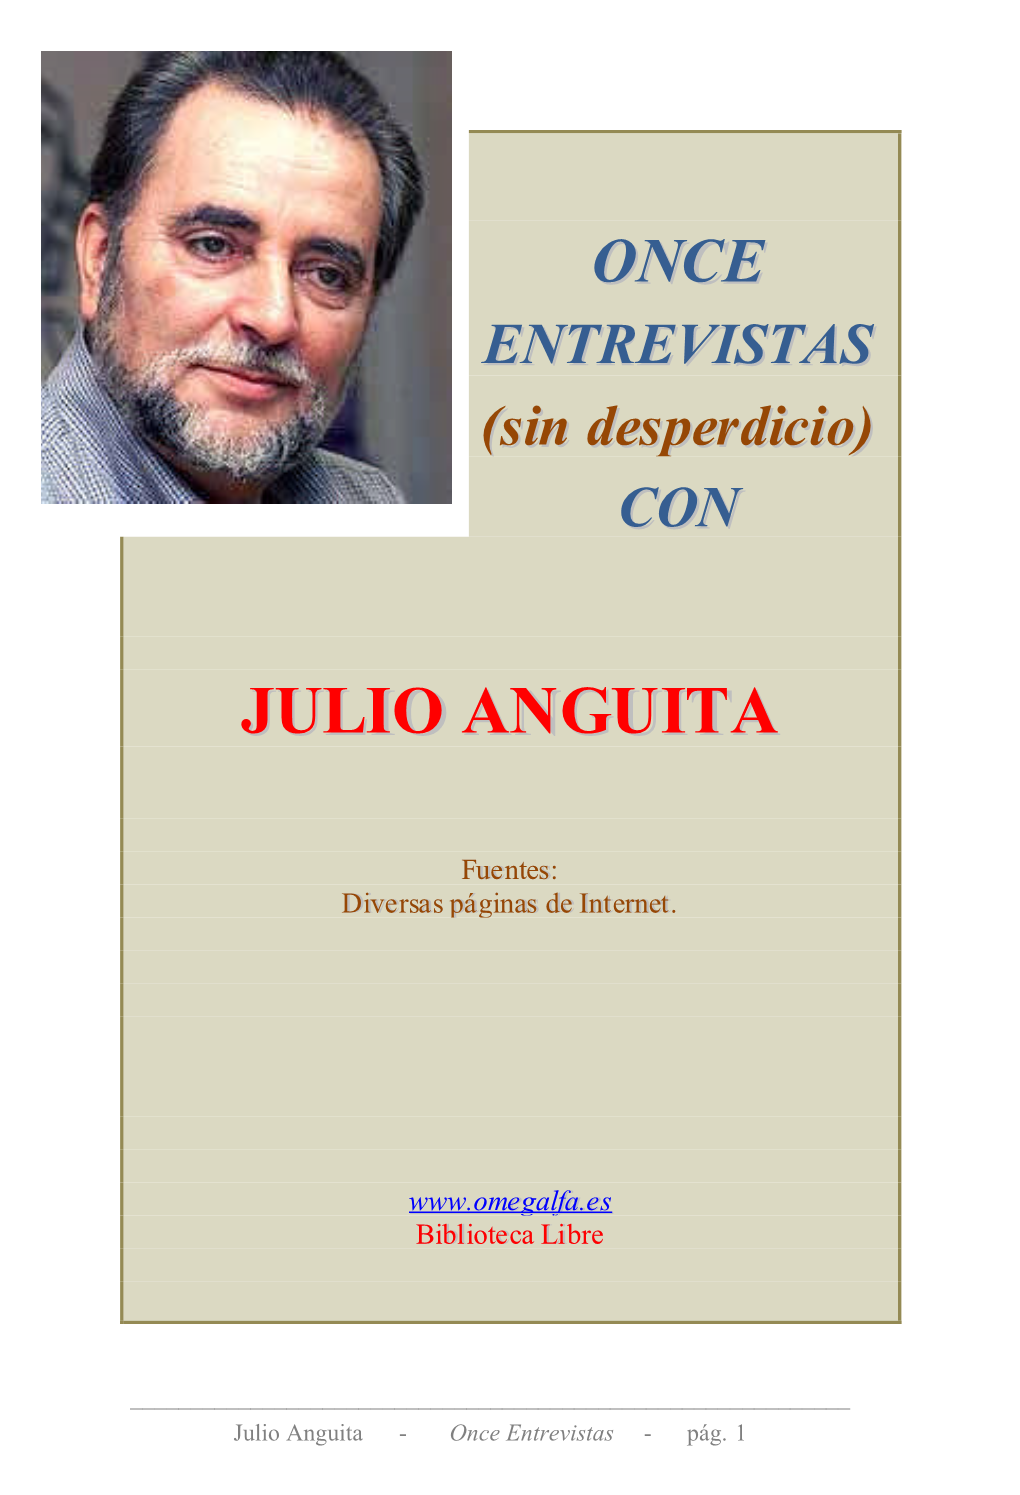 Julio Anguita - Once Entrevistas - Pág